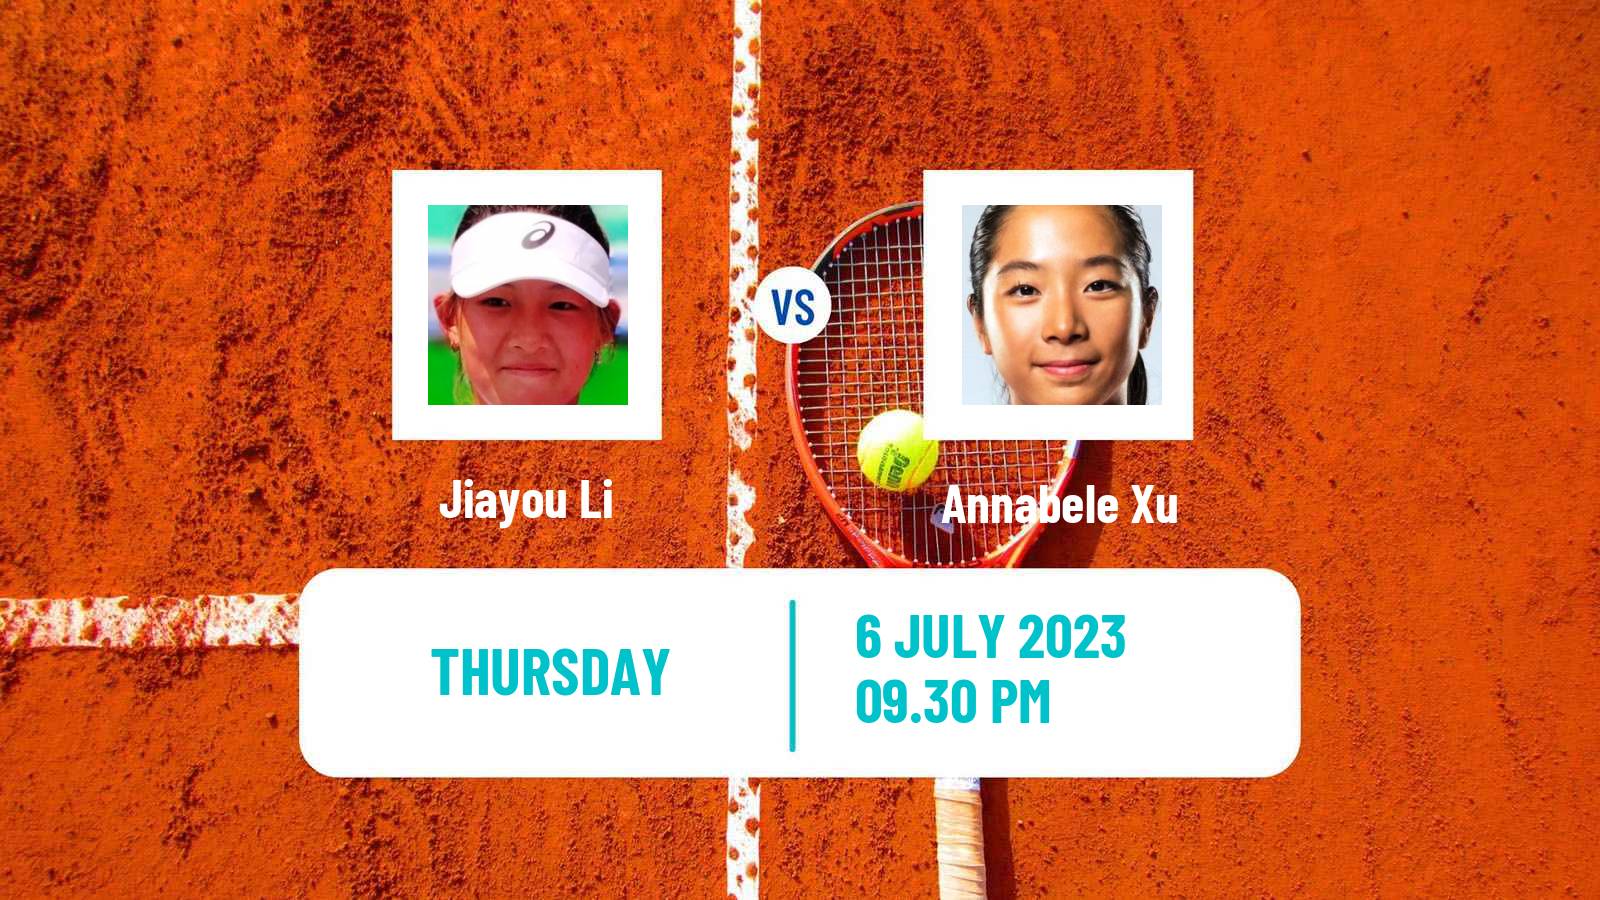 Tennis ITF W15 Tianjin 4 Women Jiayou Li - Annabele Xu